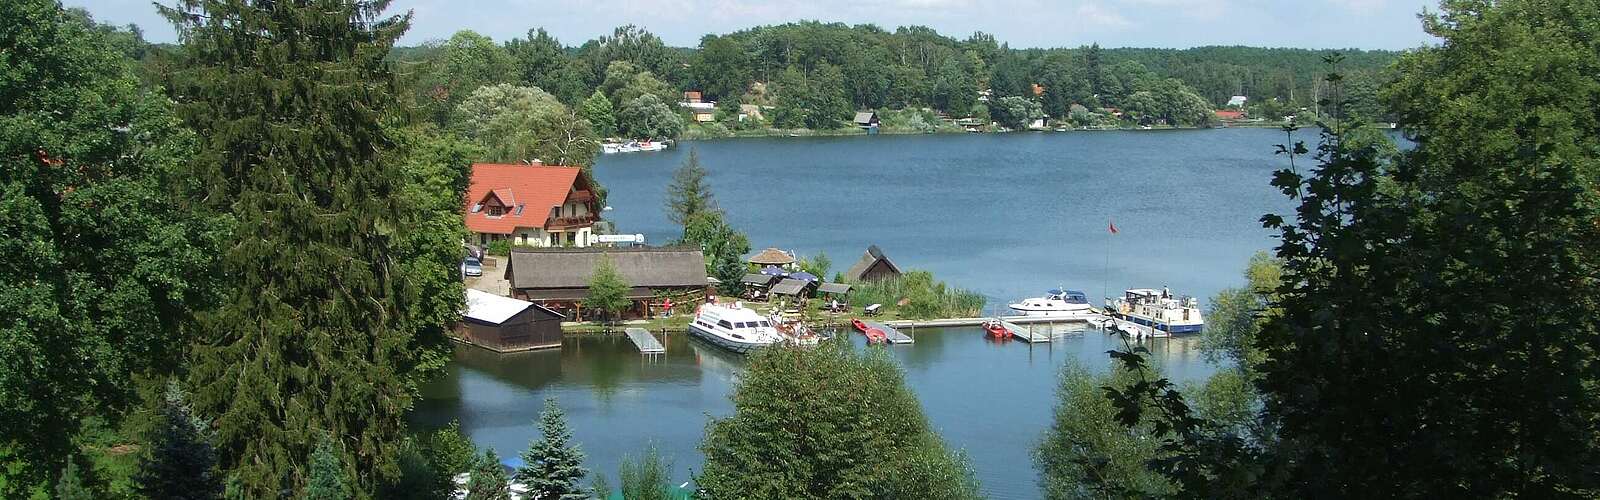 Schwarzer See, Flecken Zechlin,
        
    

        Foto: Tourismusverband Ruppiner Seenland e.V./Johanna Kerrmann